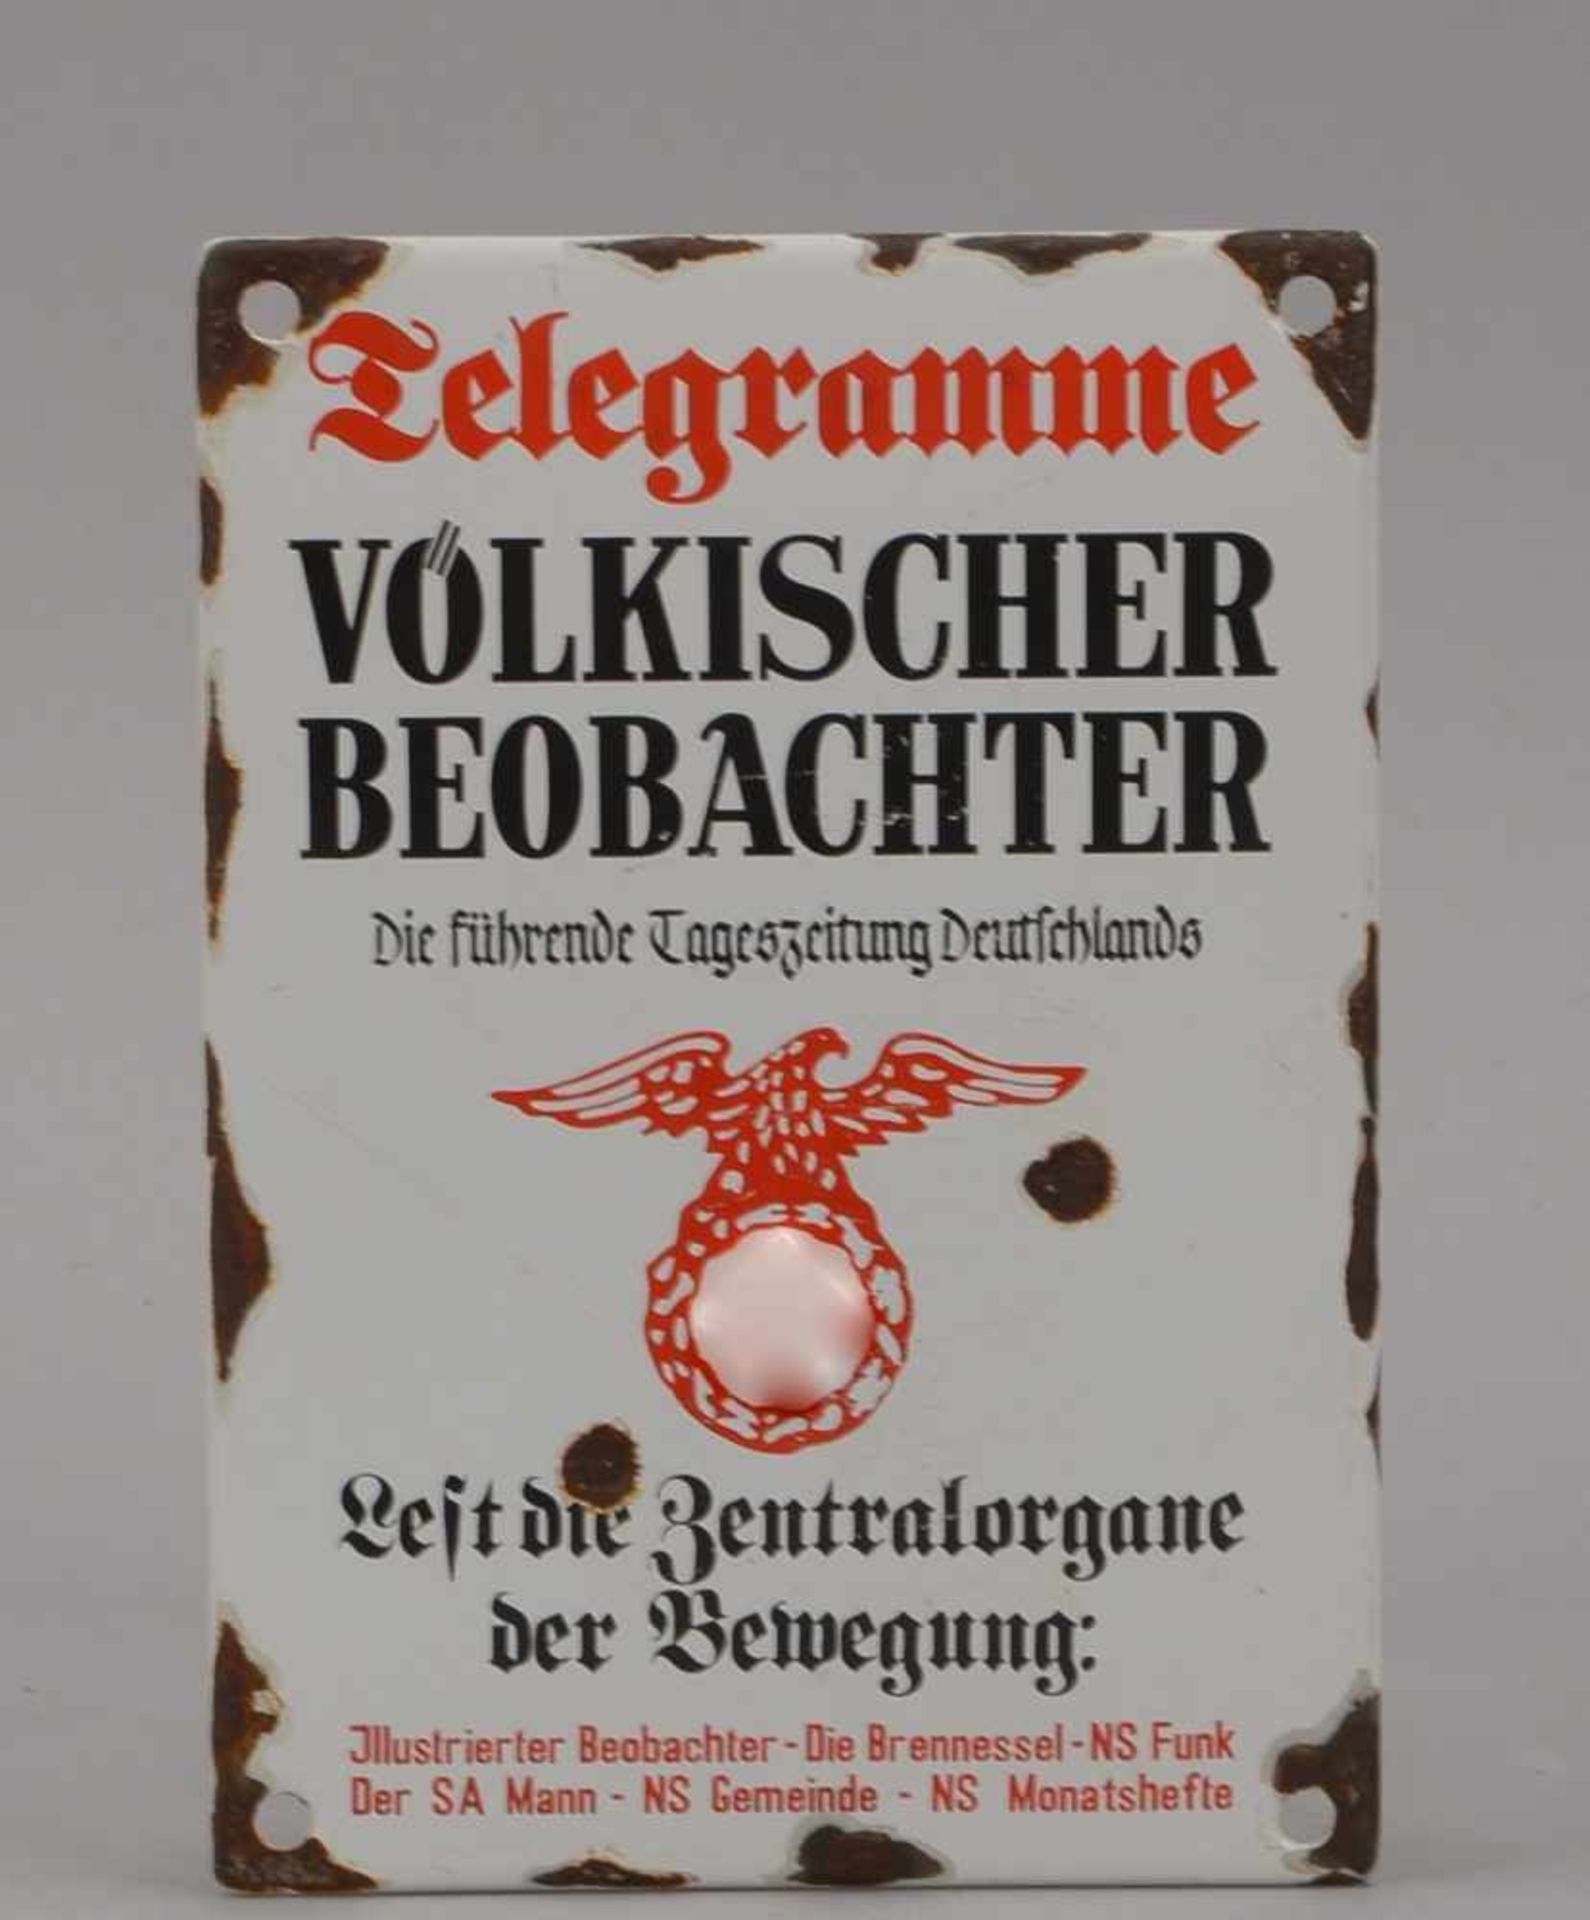 Emaille-Schild (Reproduktion), 'III. Reich', mit Aufschrift, 'Telegramme, Völkischer Beobachter -